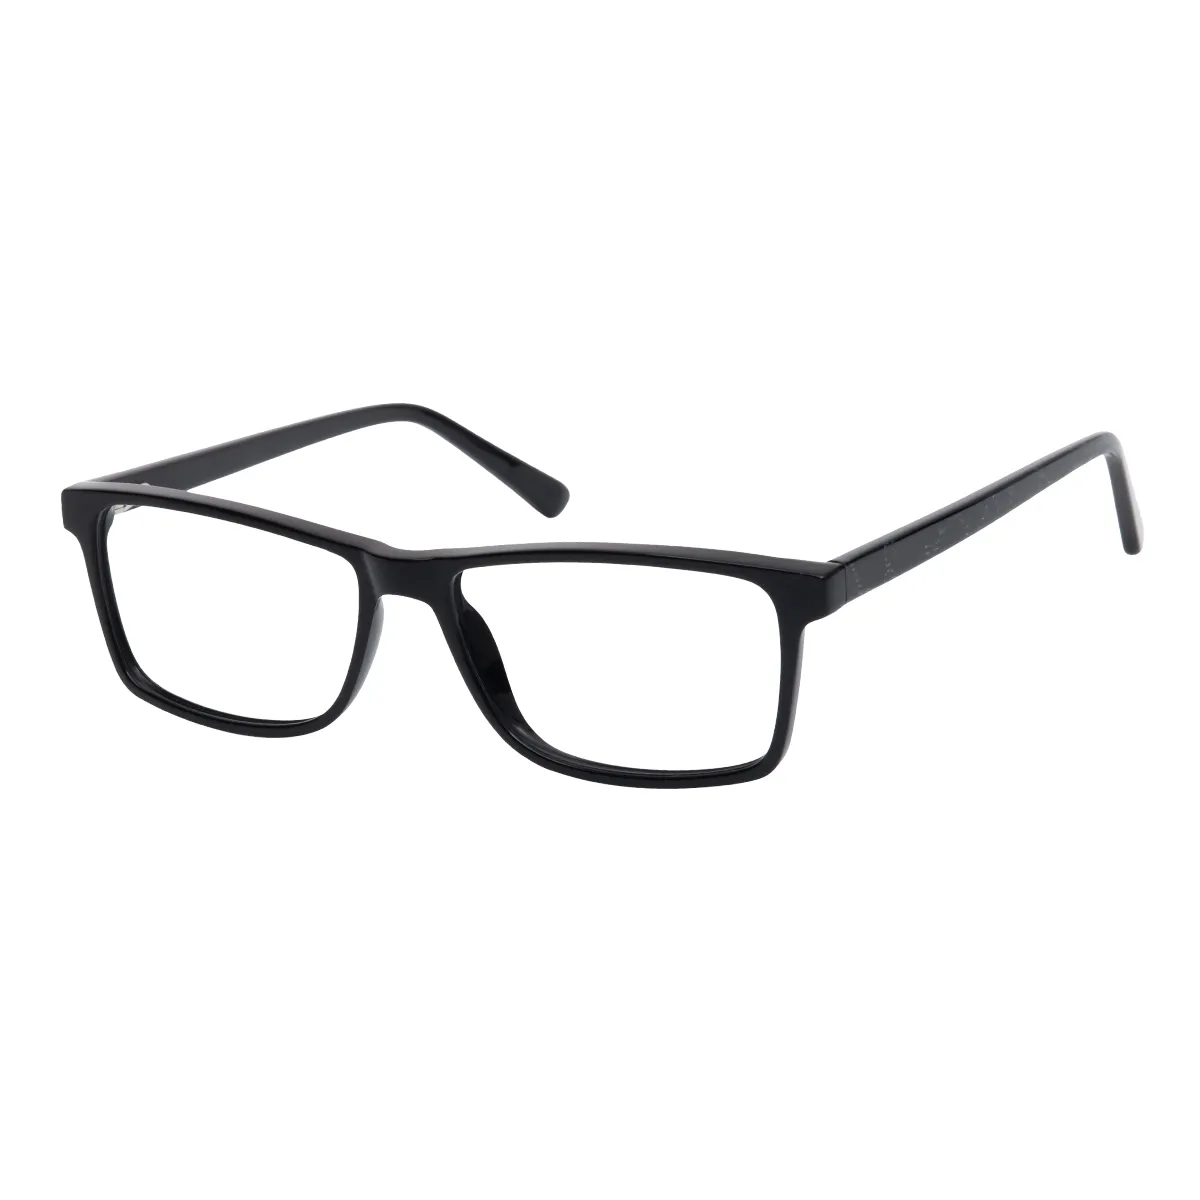 Ramiro - Rectangle Black Glasses for Men